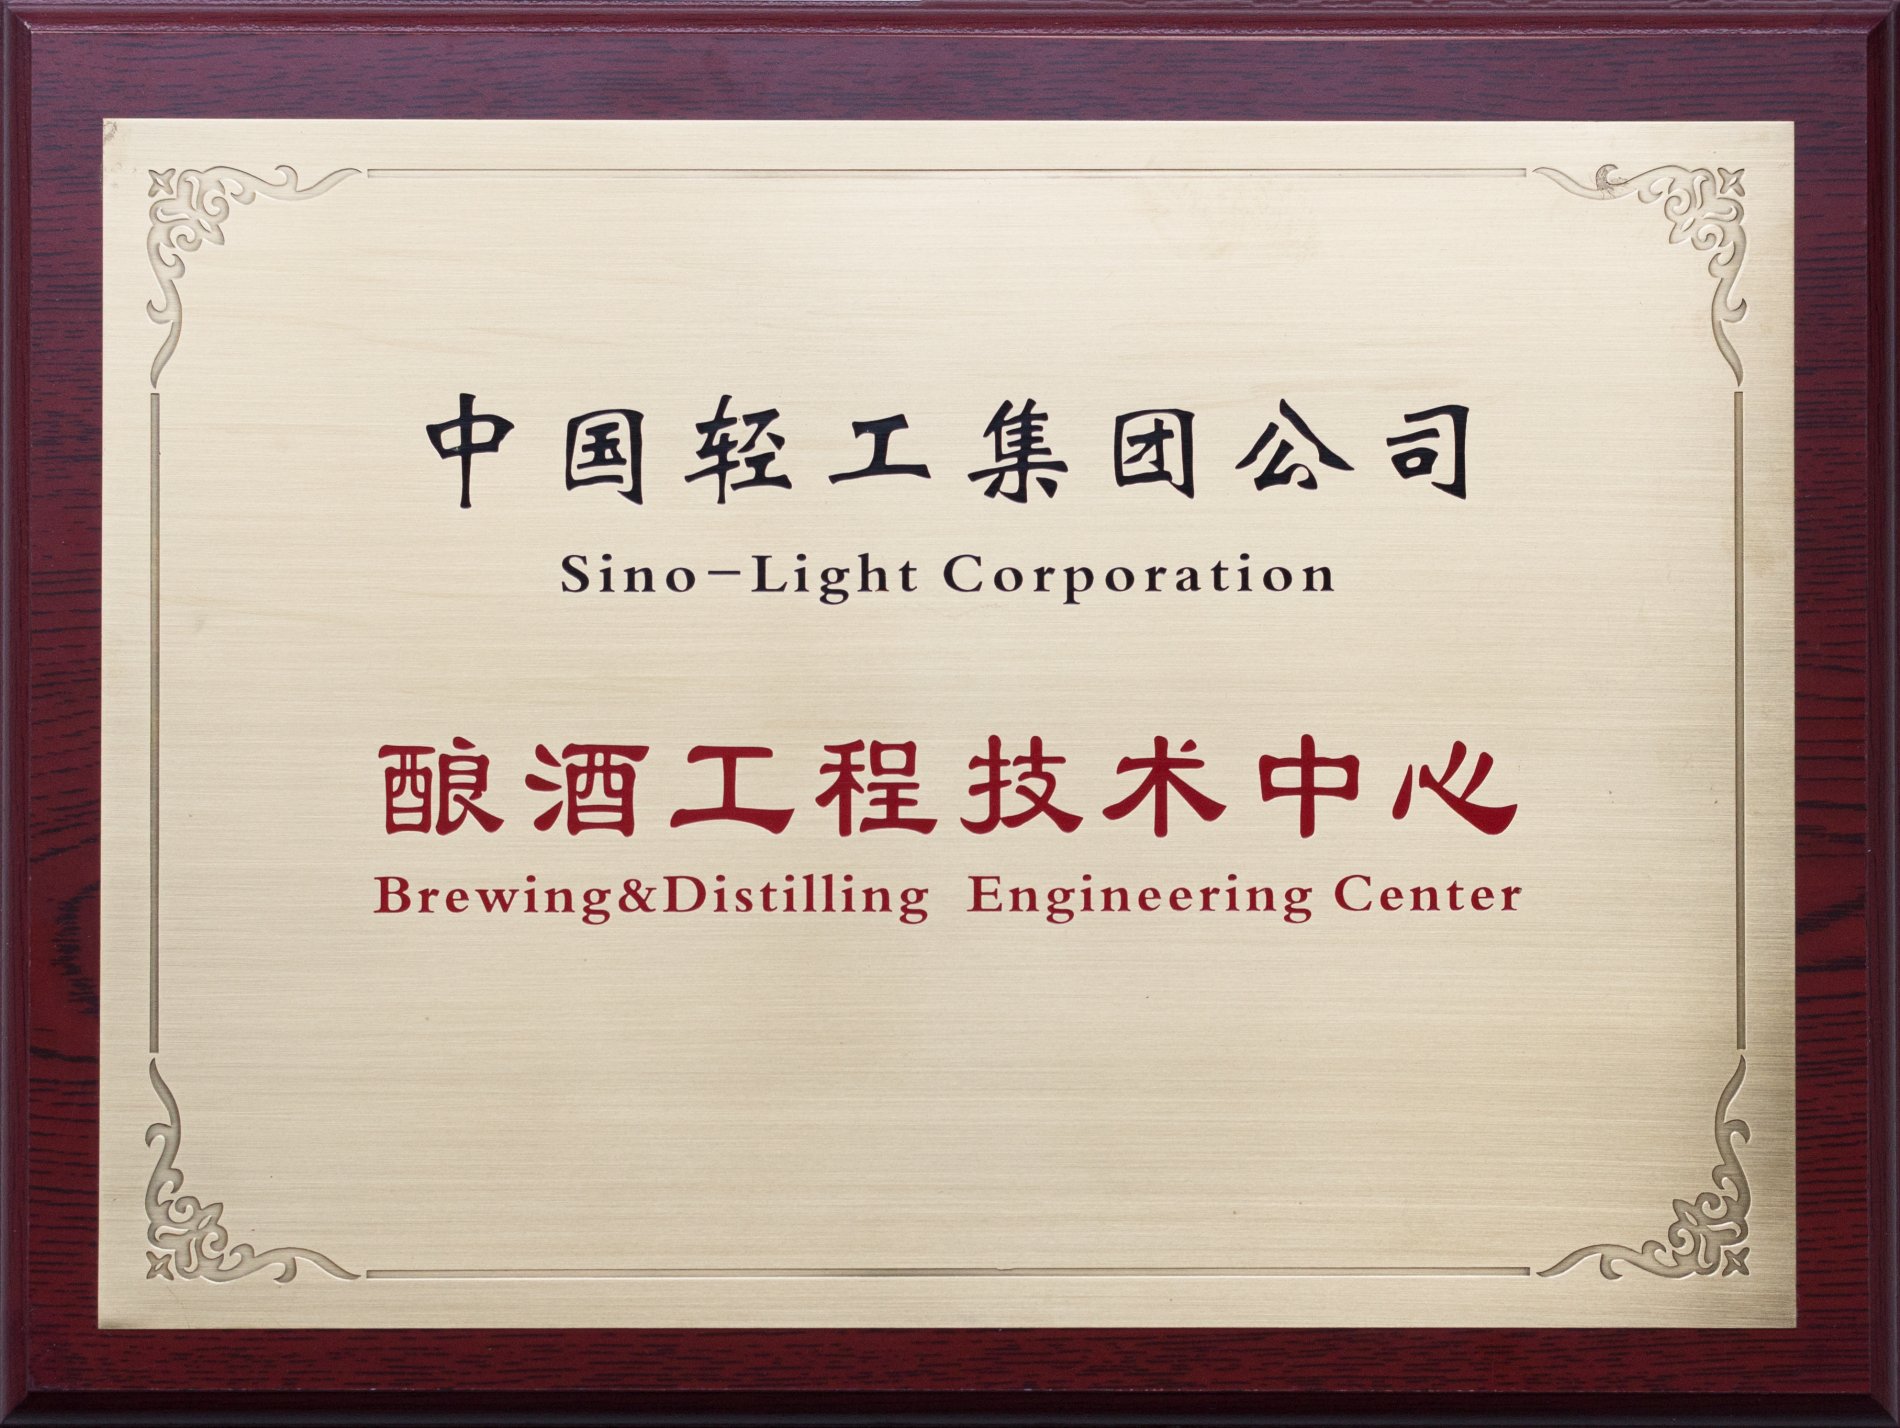 中轻酿酒工程技术中心